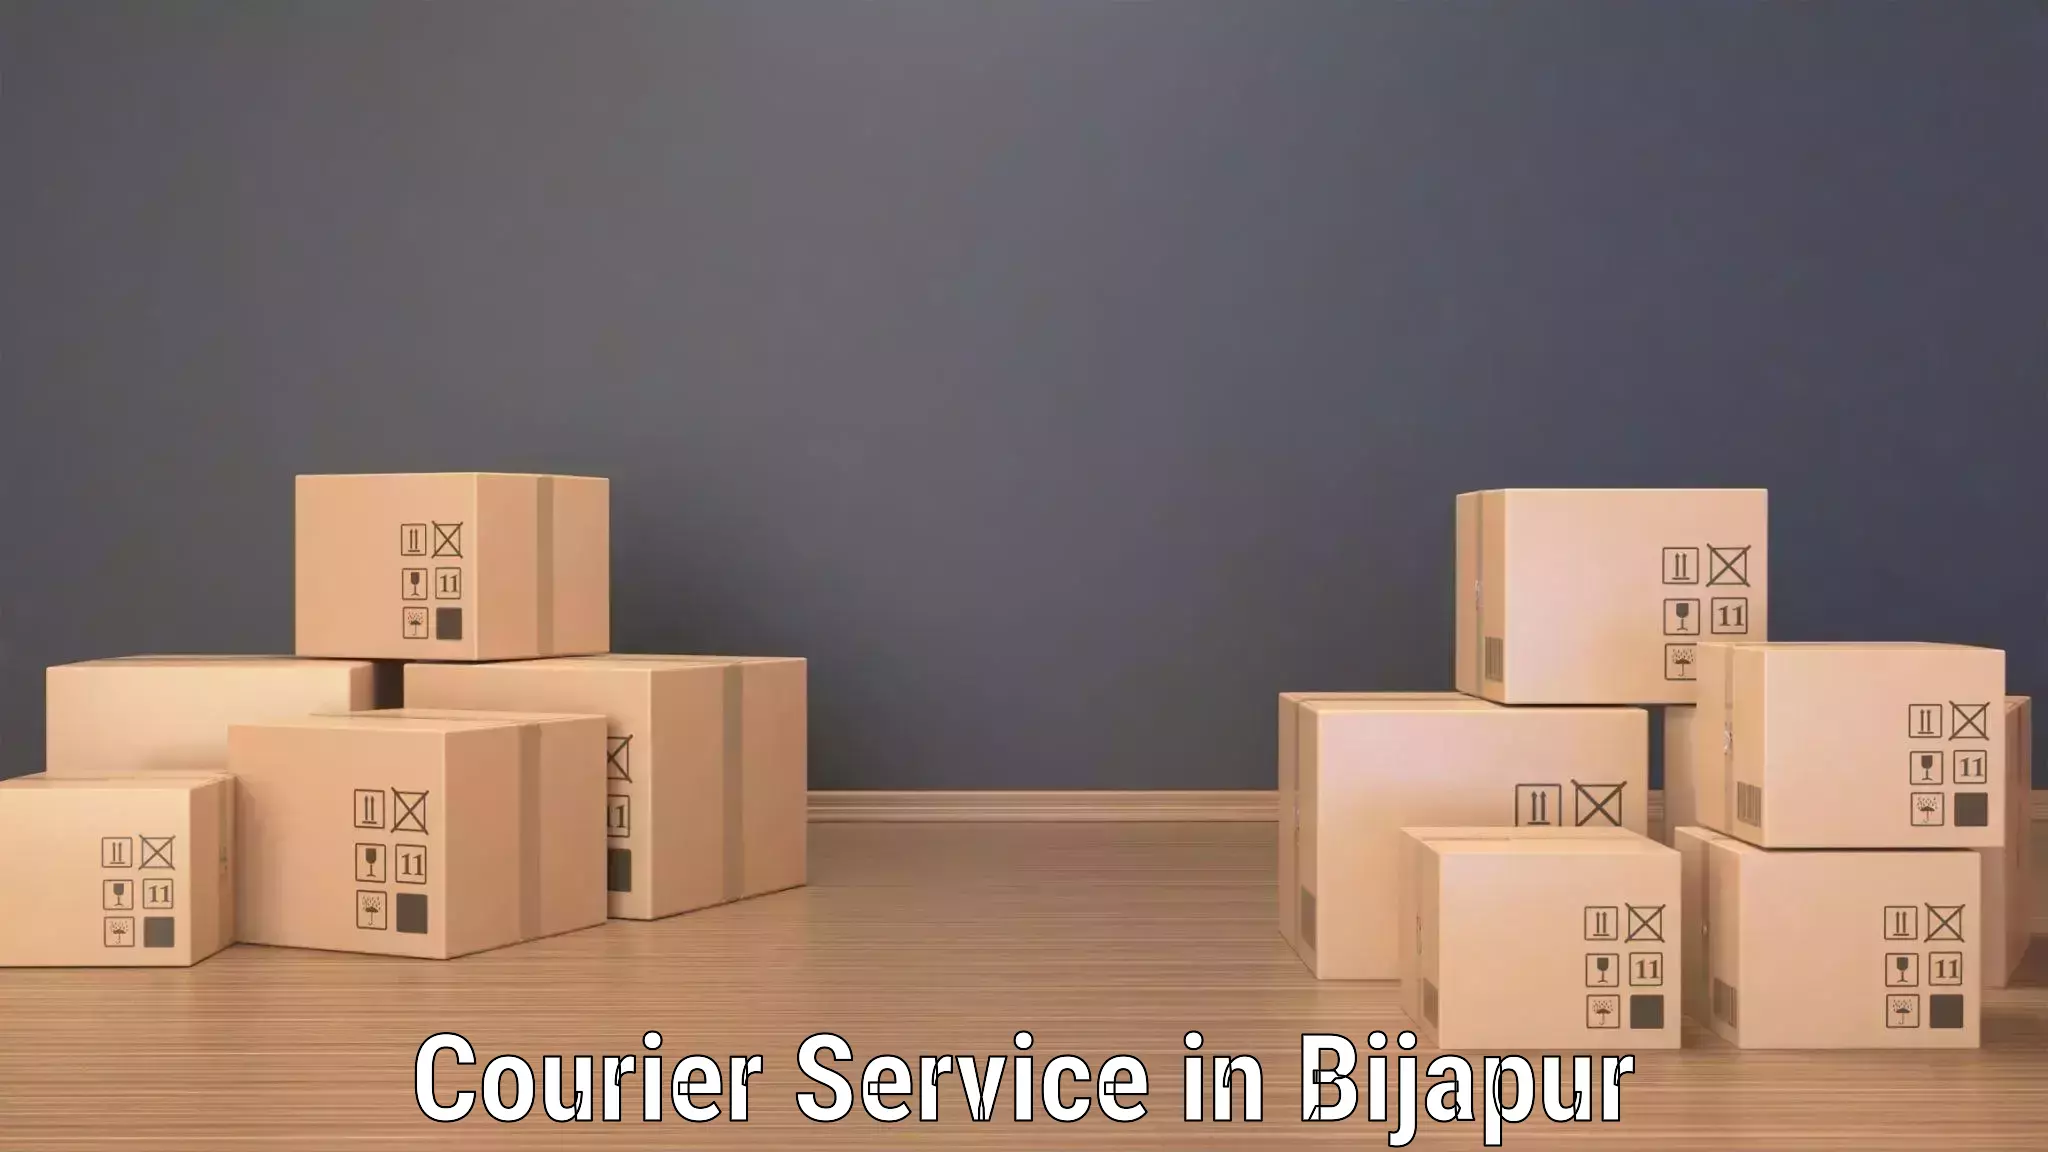 Efficient freight service in Bijapur